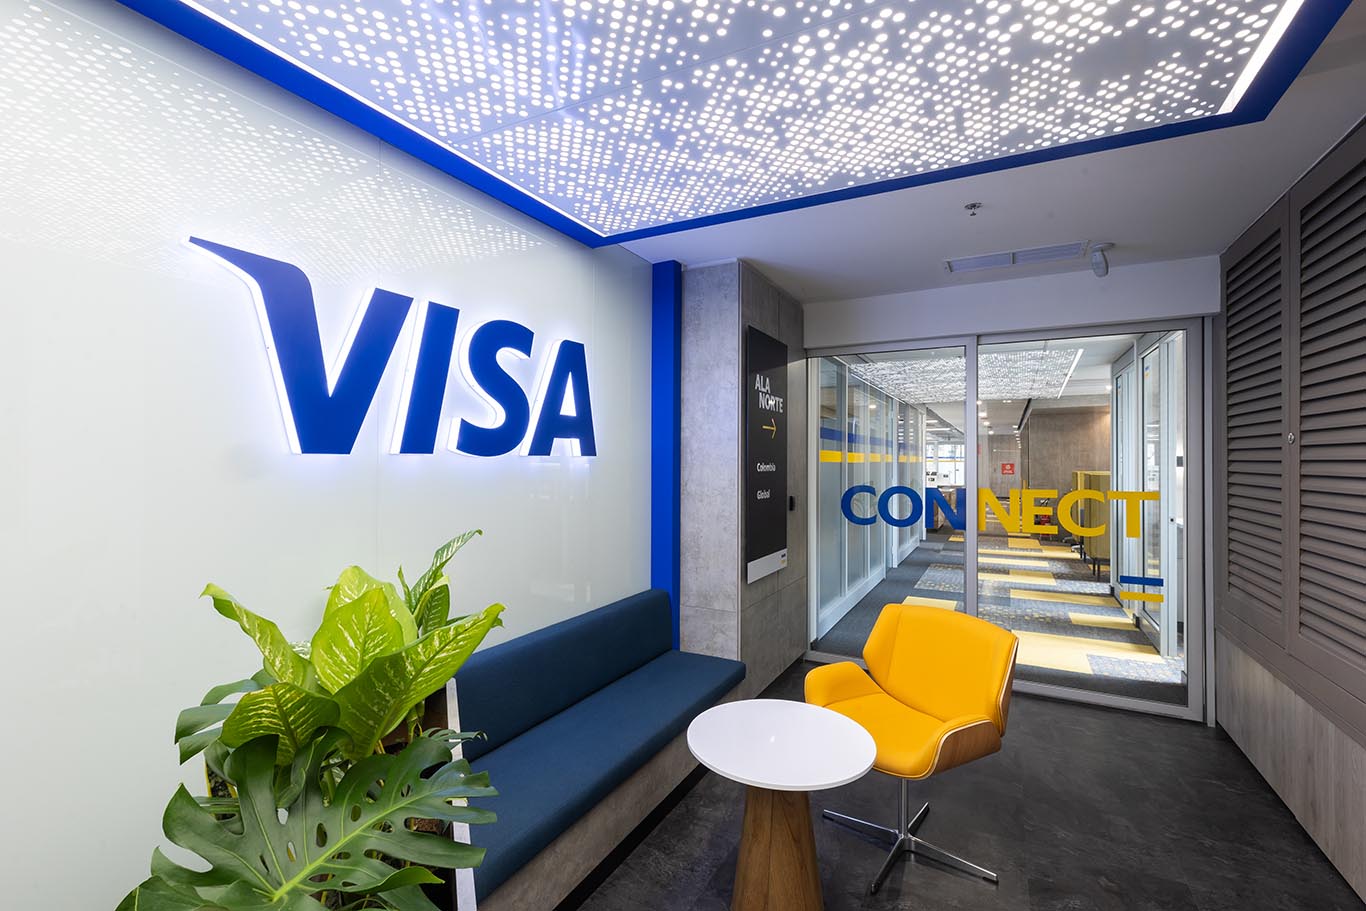 Visa anuncia 450 vacantes en Colombia